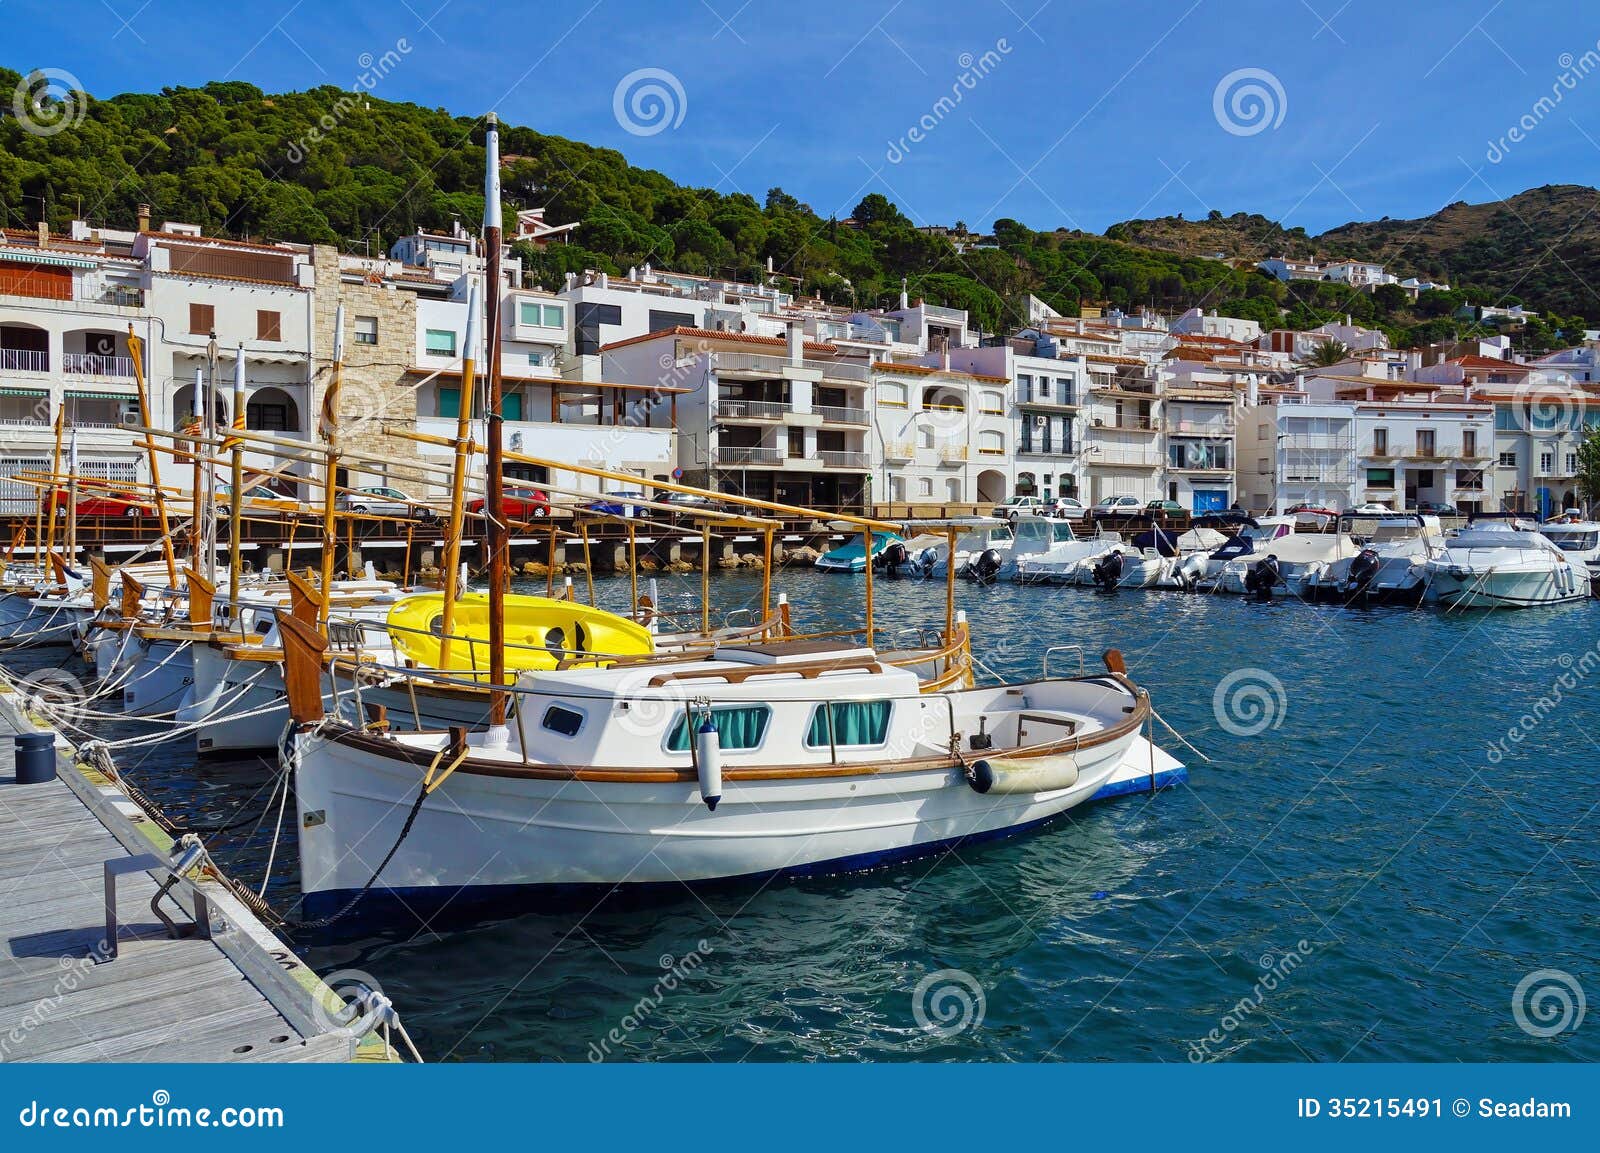 Mediterranean Boats At Dock Stock Image - Image of coastal ...